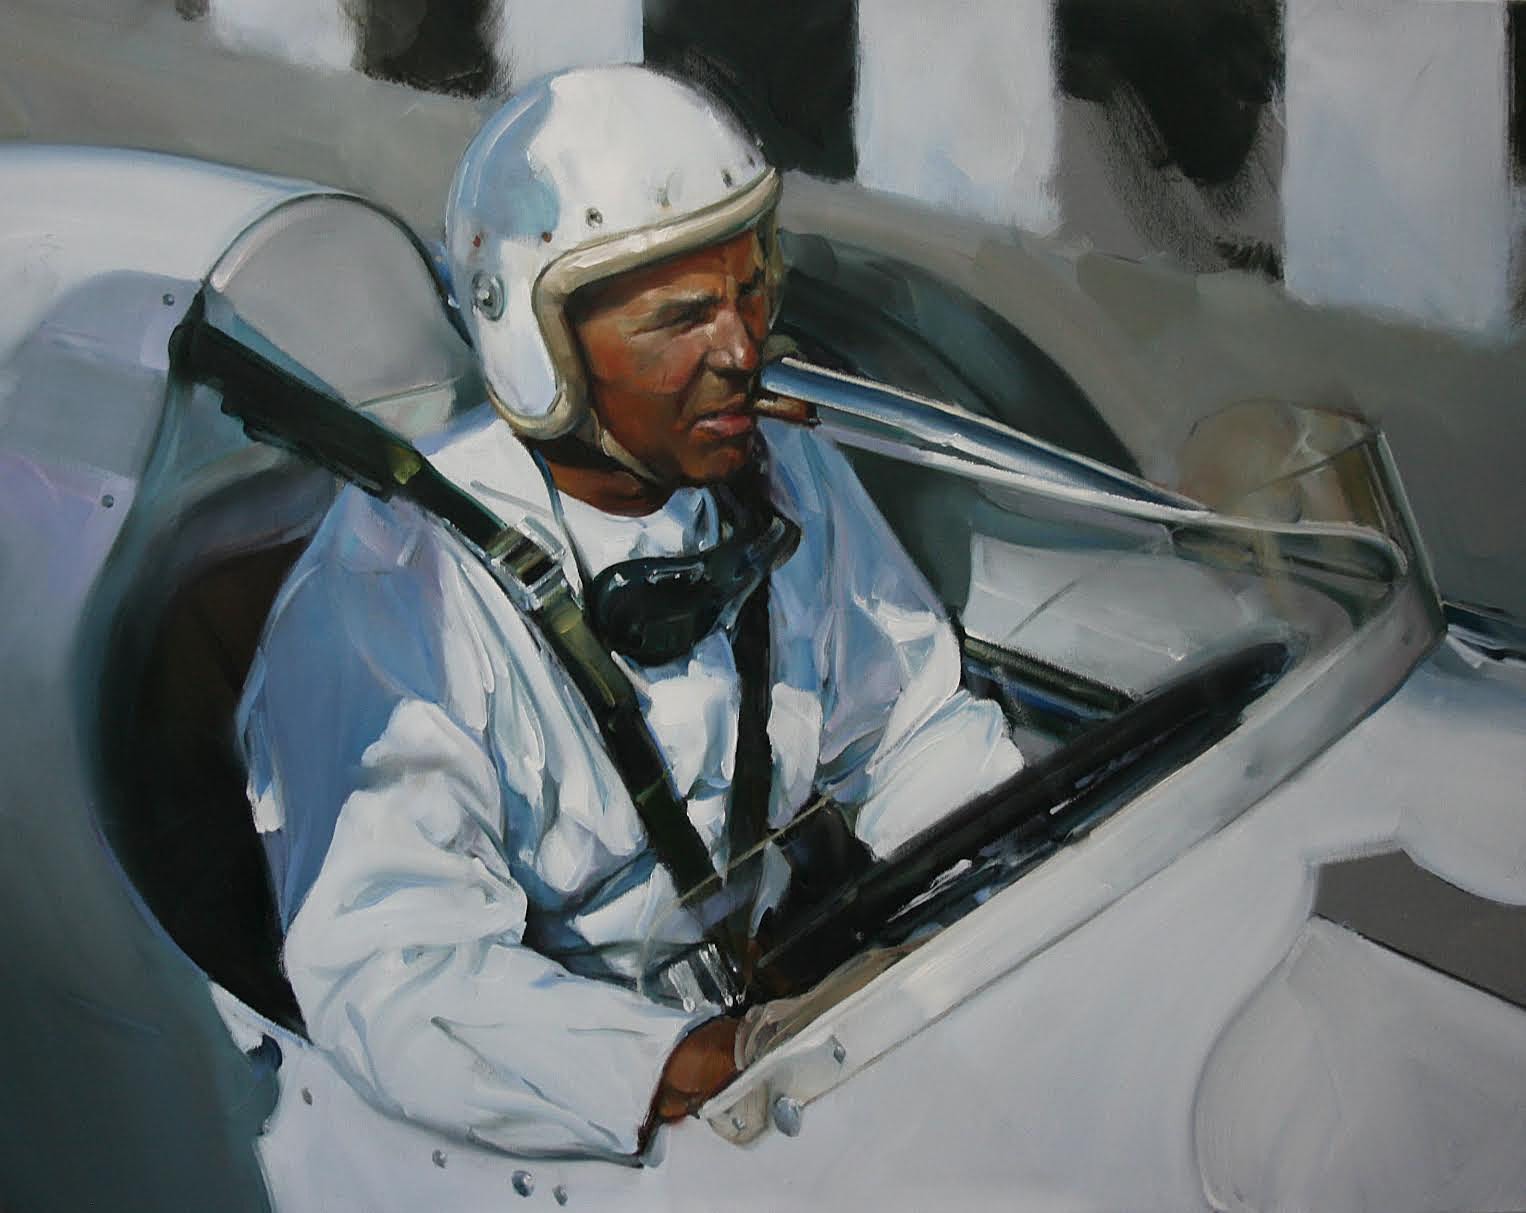 PleinAir Salon Online Art Competition February 2023 Top 100 Finalist Luis Azon Race Car's Pilot Vehicle Painting